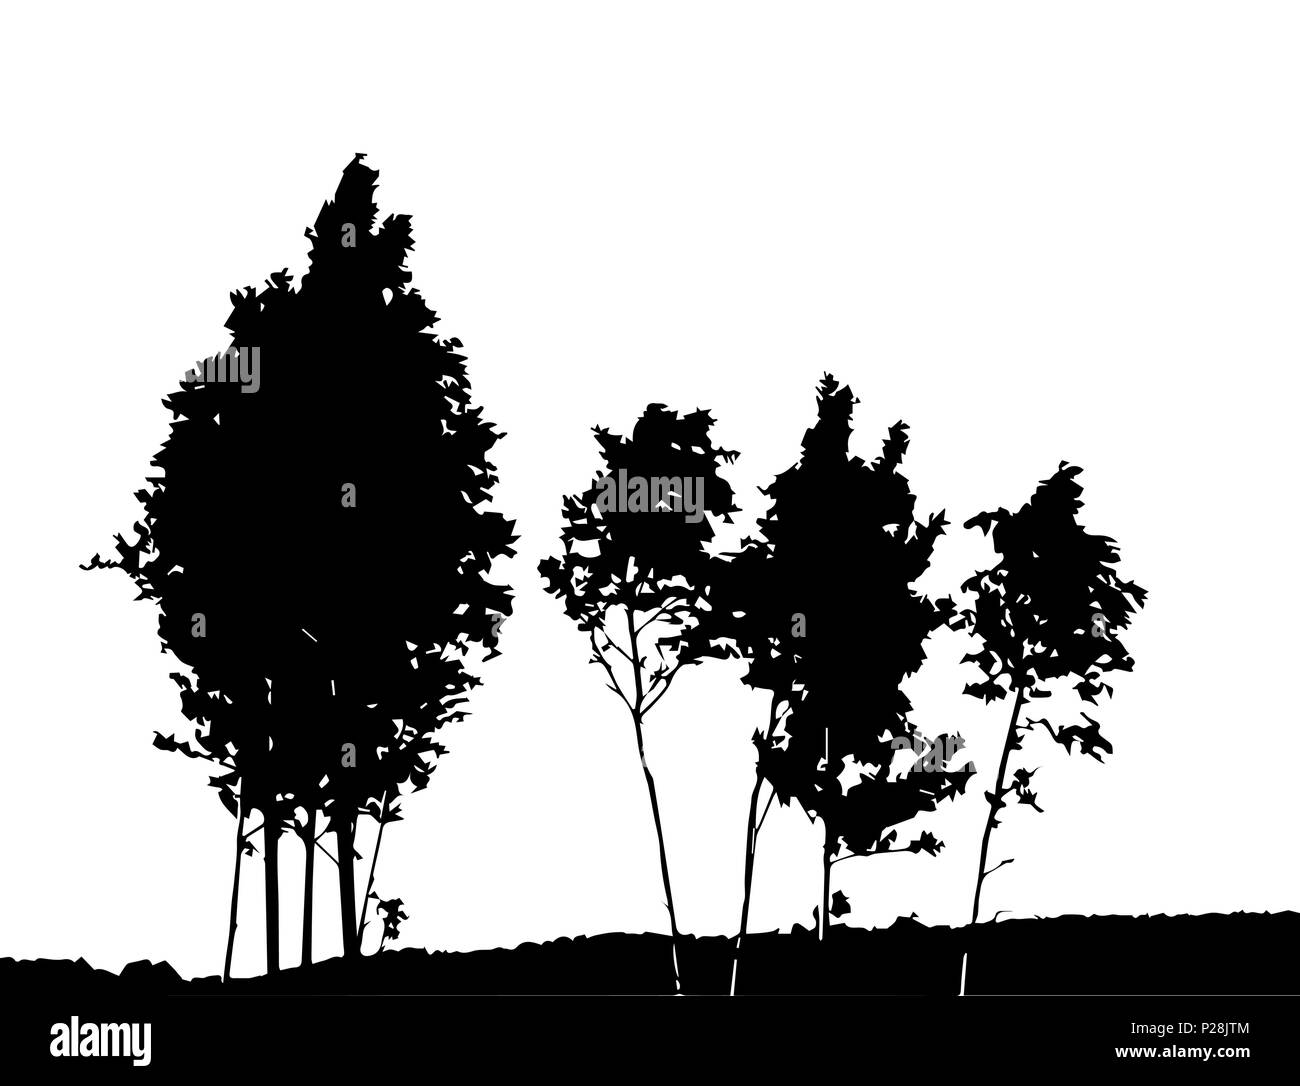 Baum-Silhouette isoliert auf weißem Migrationshintergrund. Vecrtor Illustration Stock Vektor